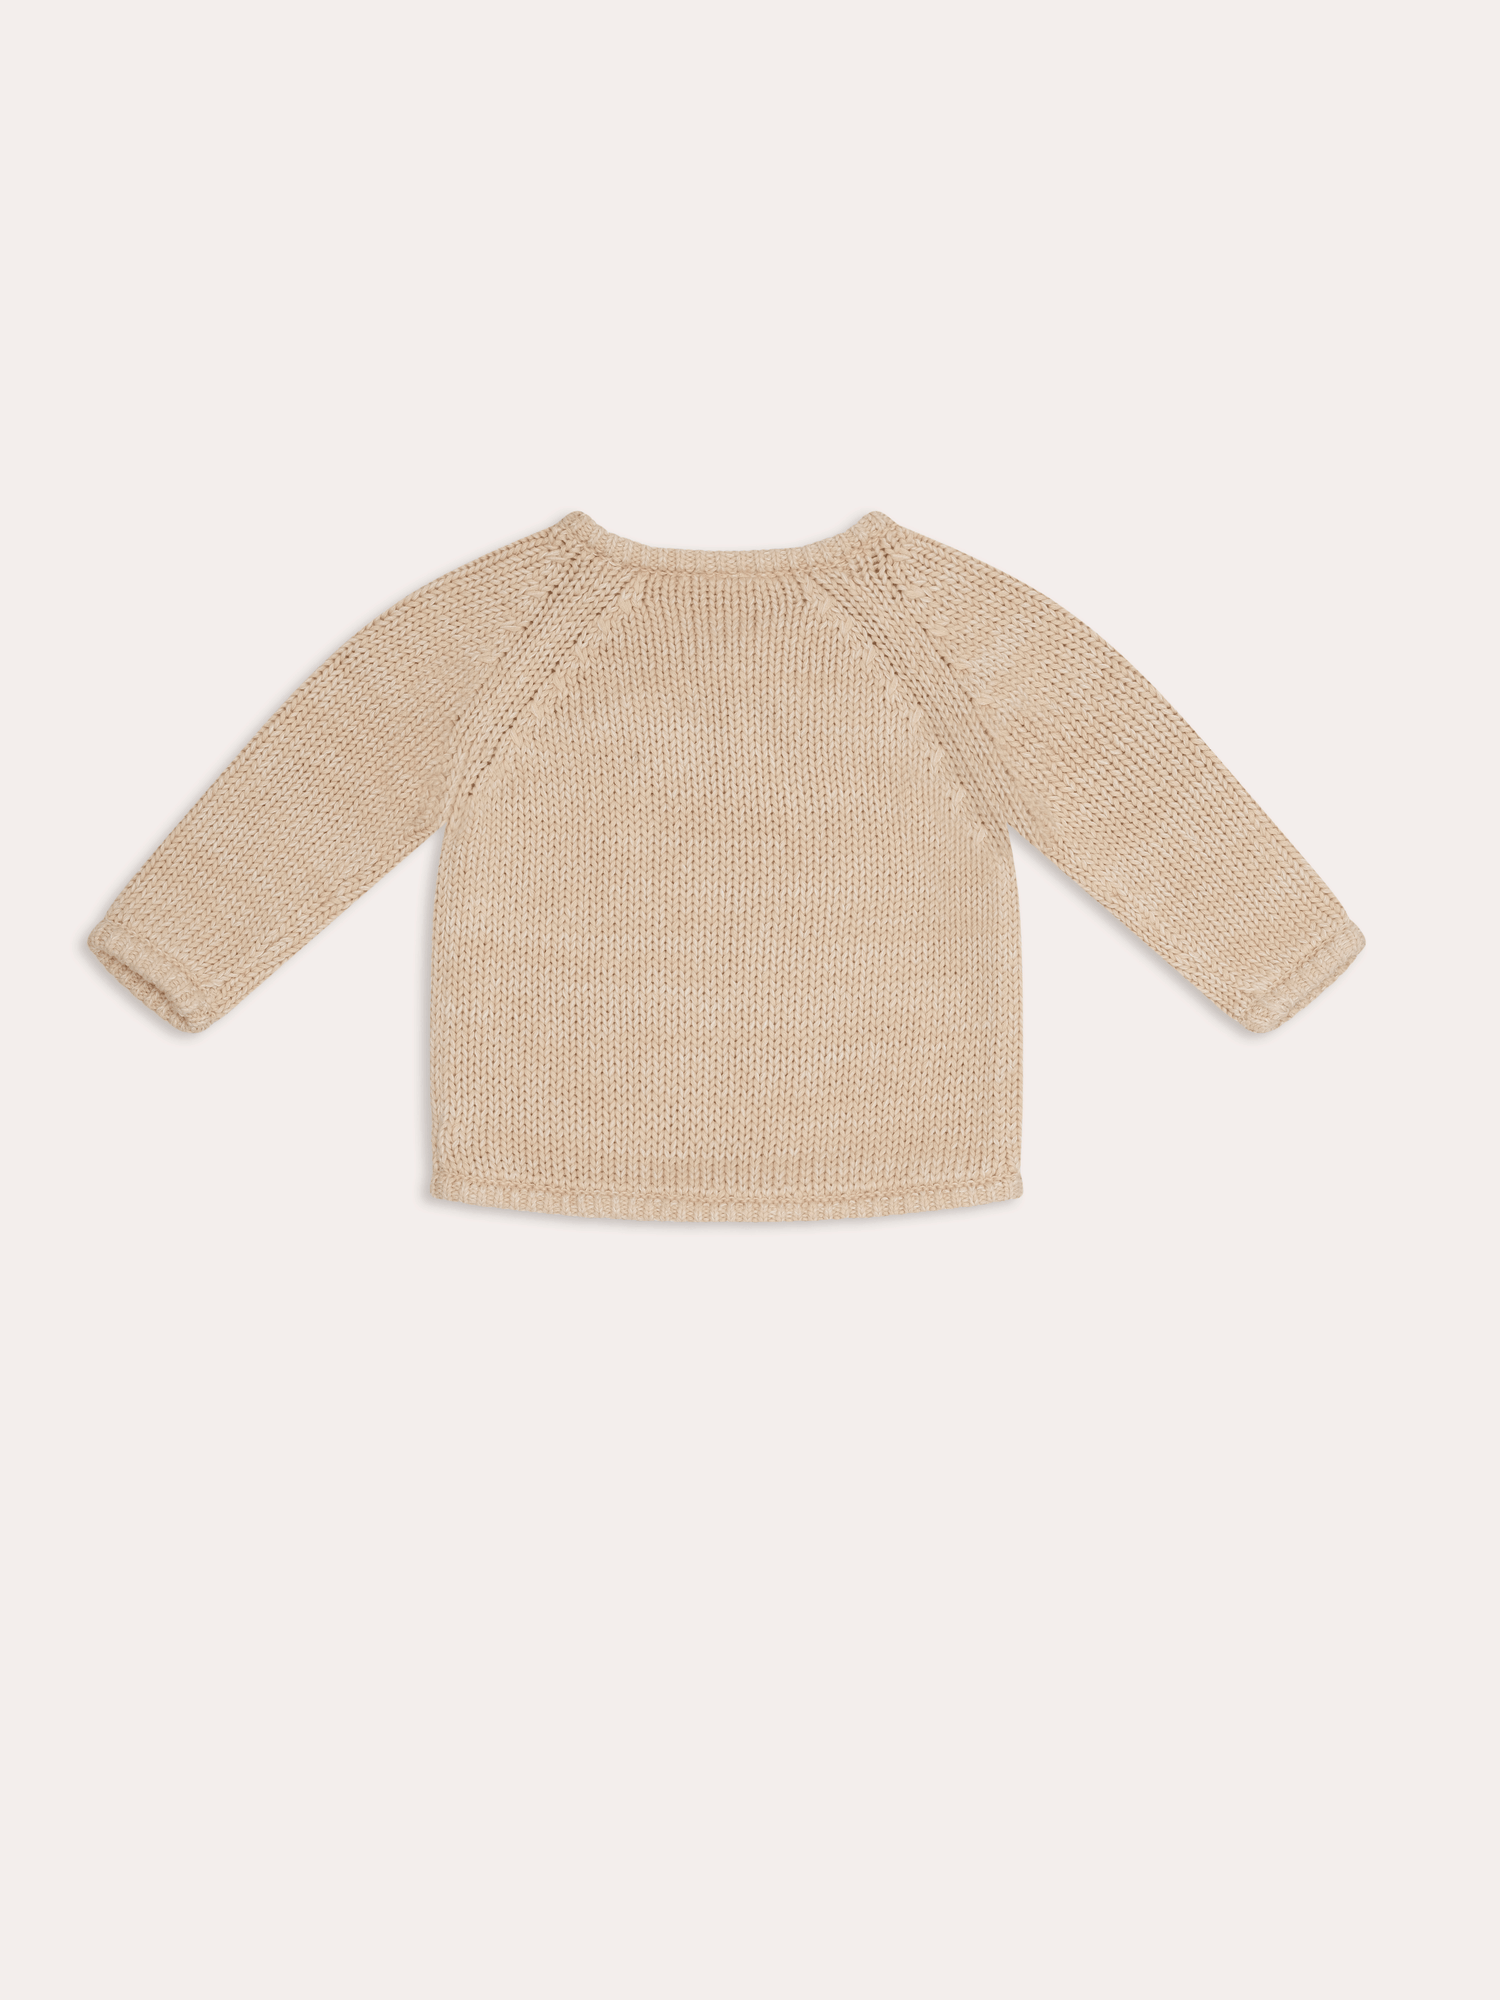 Poet baby knit Jumper | Vanilla